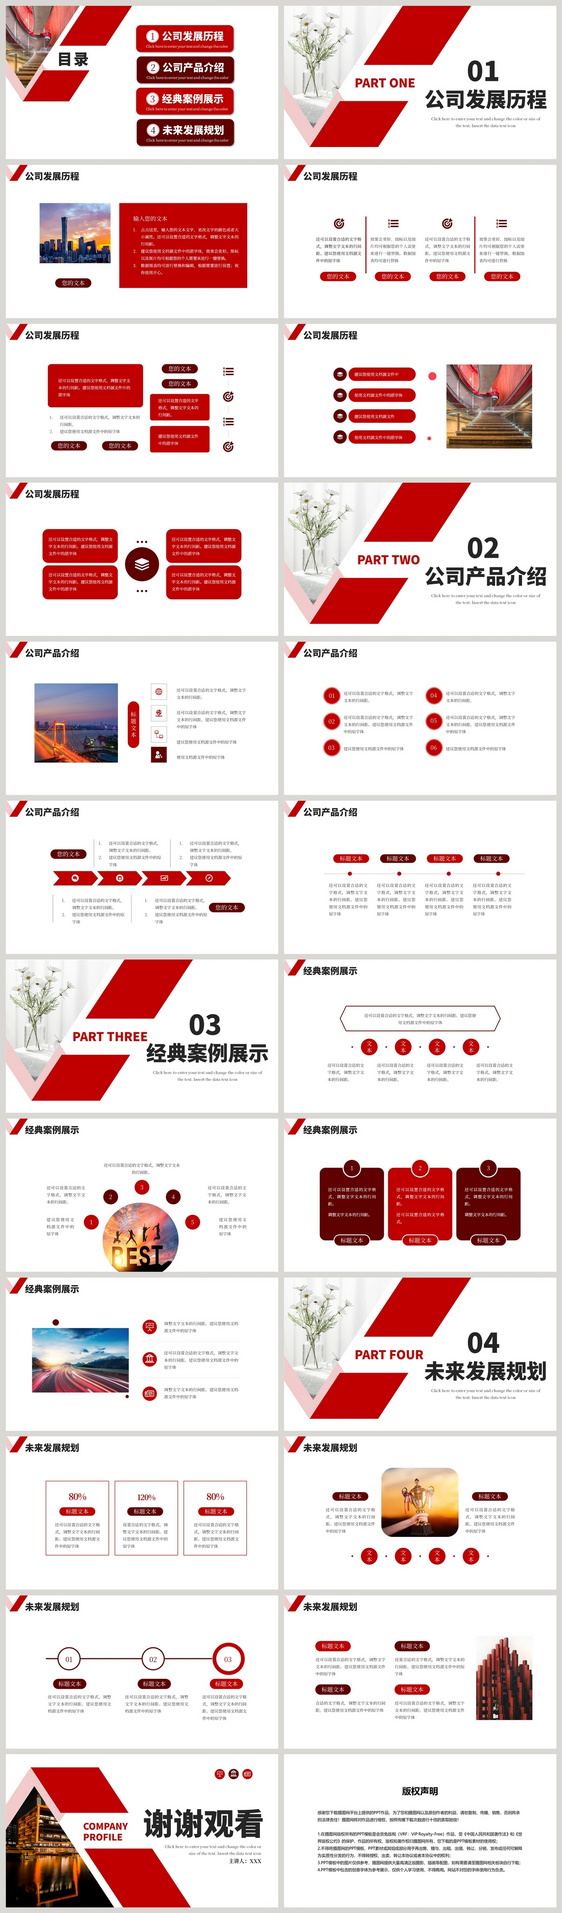 红色大气企业公司介绍品牌宣传PPT模板